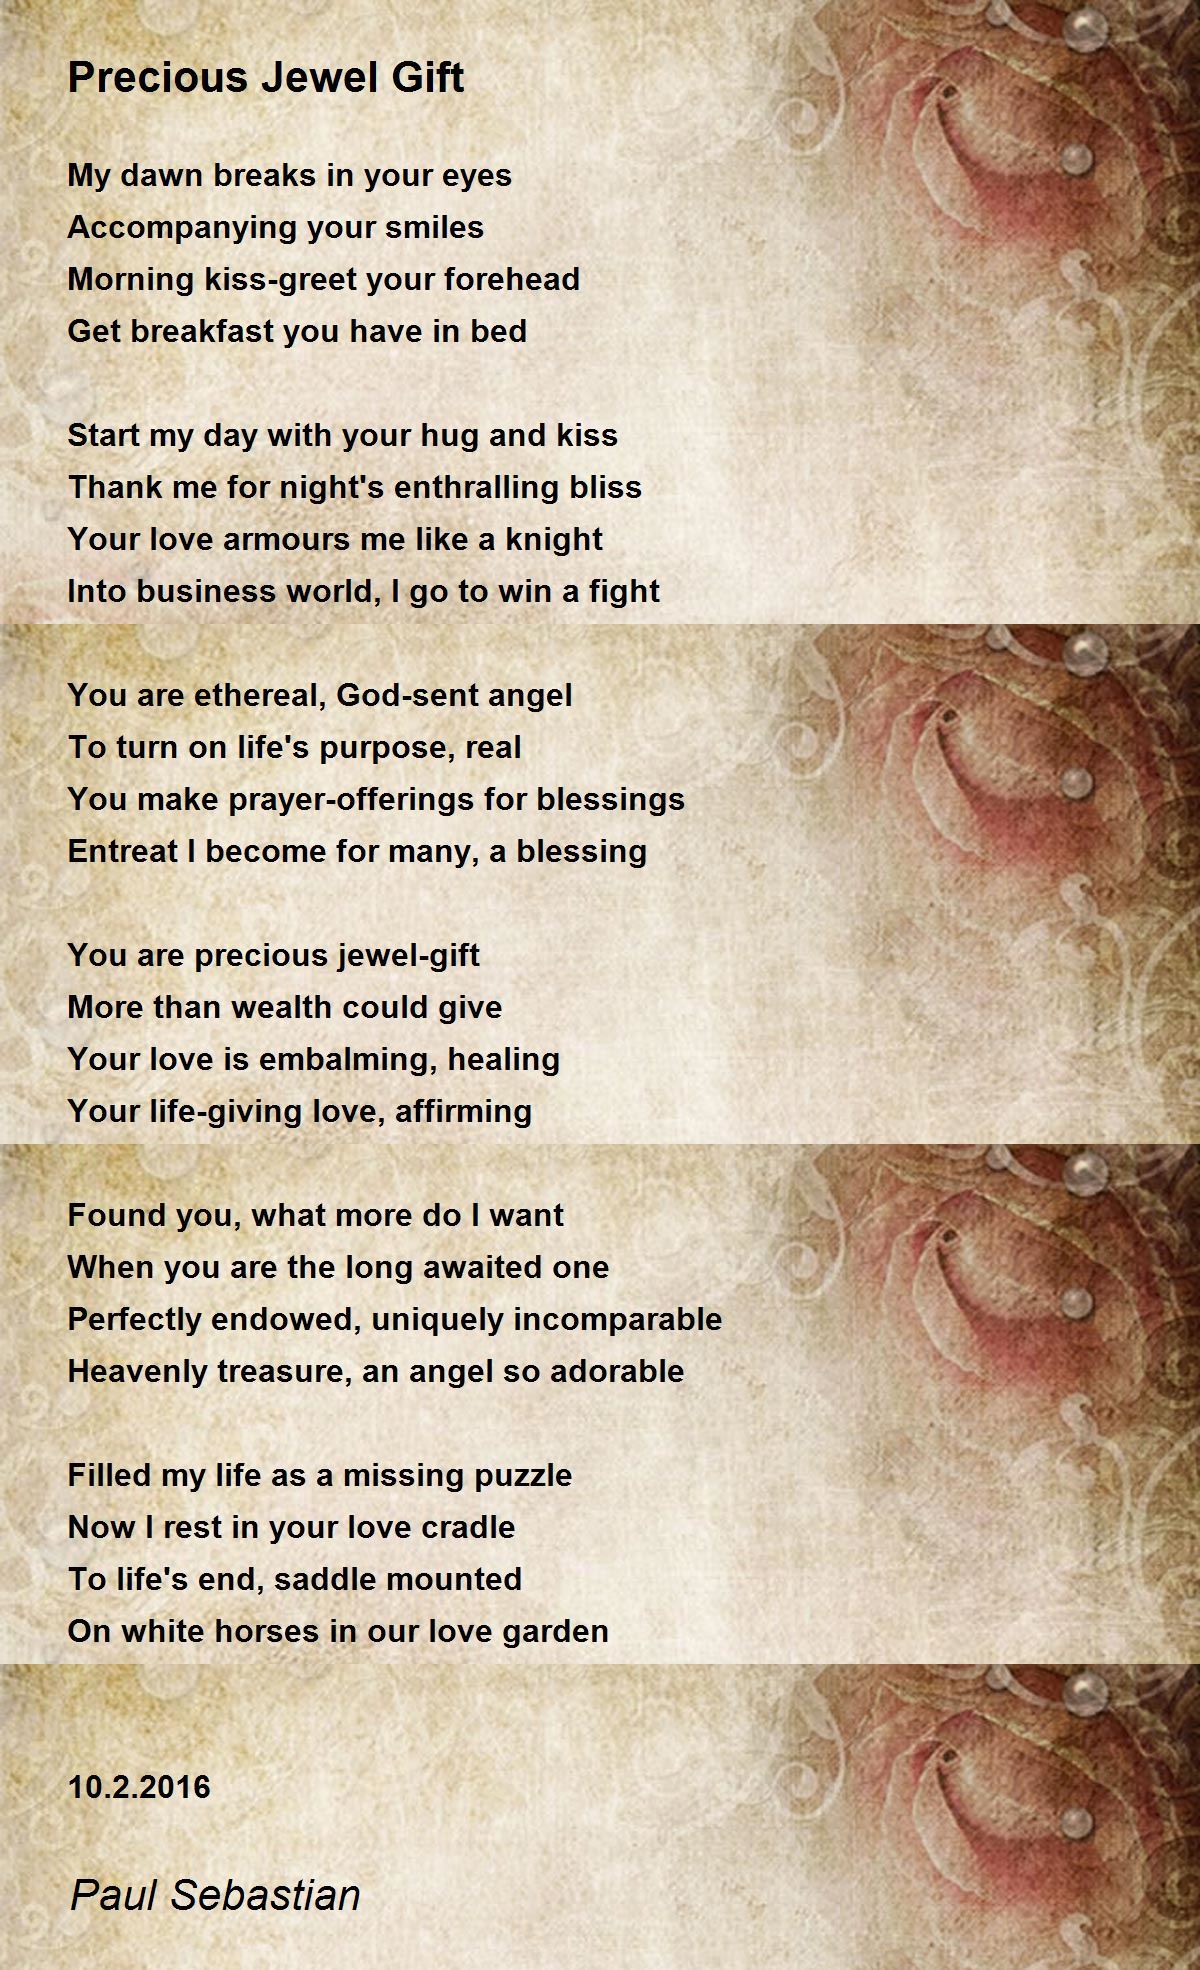 Precious Jewel Gift - Precious Jewel Gift Poem by Paul Sebastian